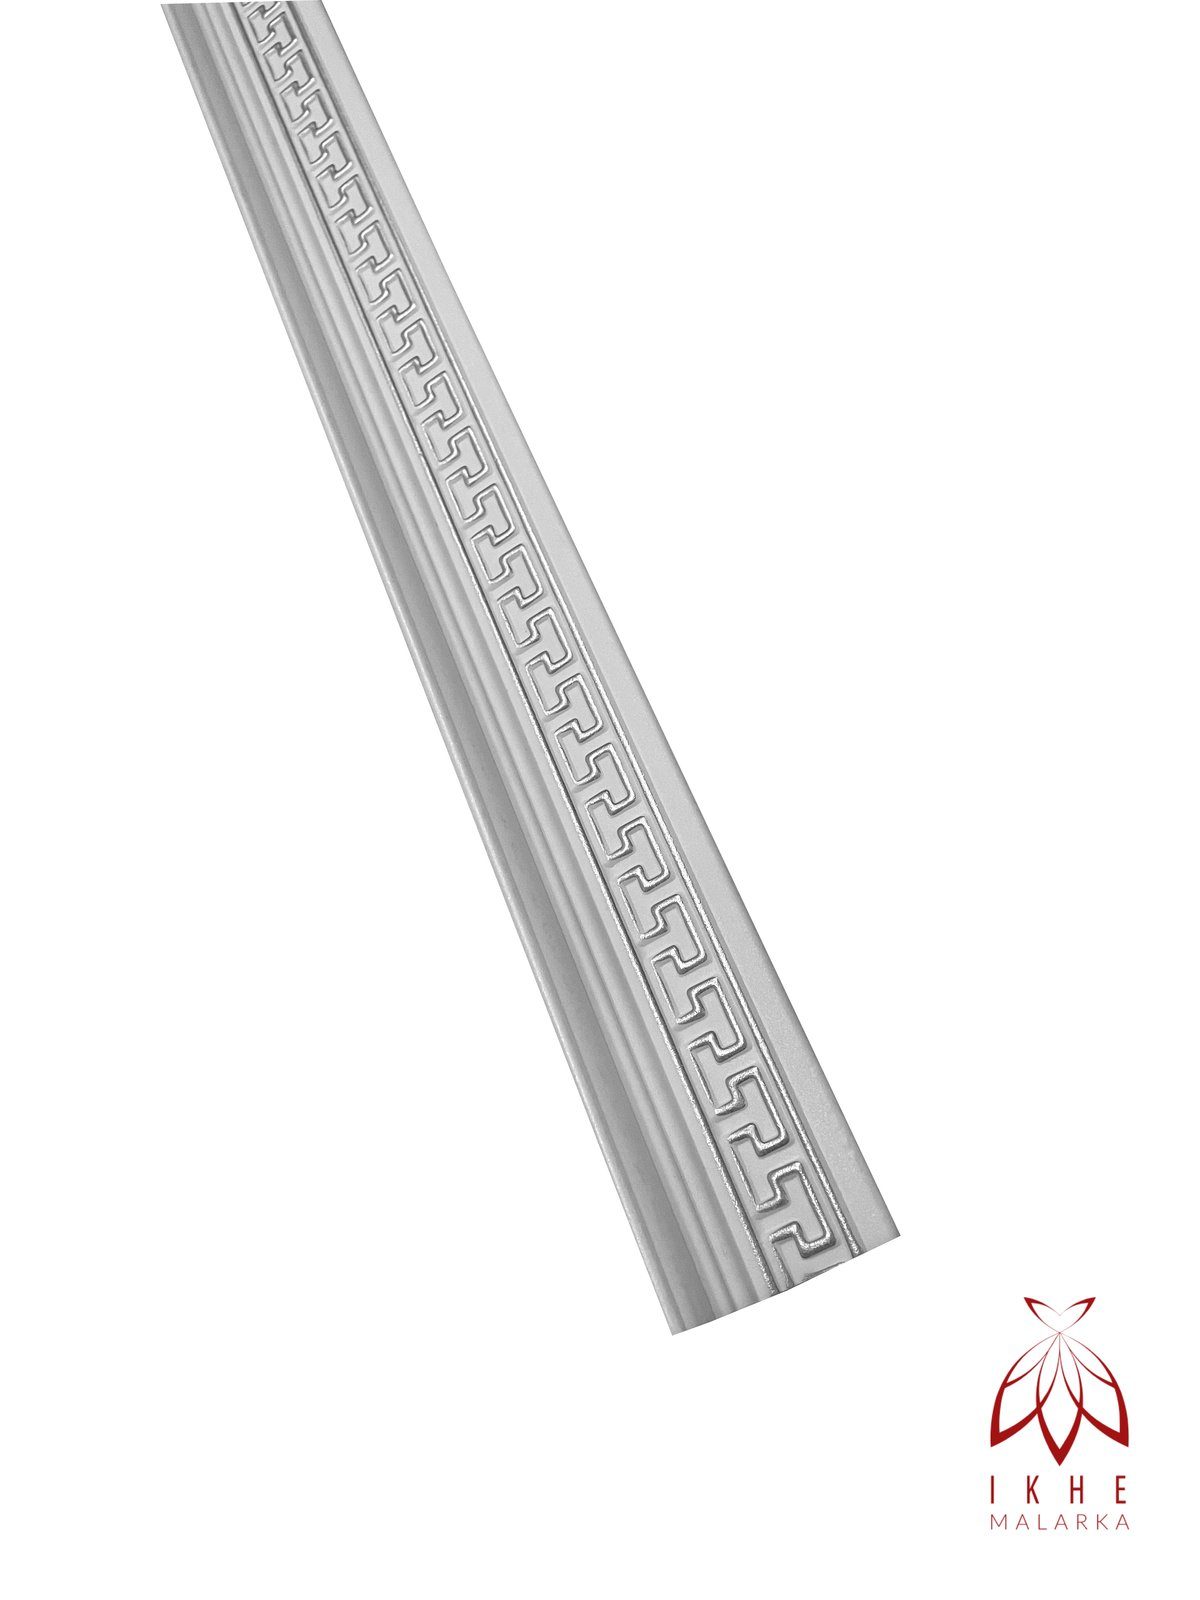 IKHEMalarka Sockelleiste Dekorleisten Styroporleisten Stuckleisten = M17B-S 8 8 Stück Zierprofile, Meter